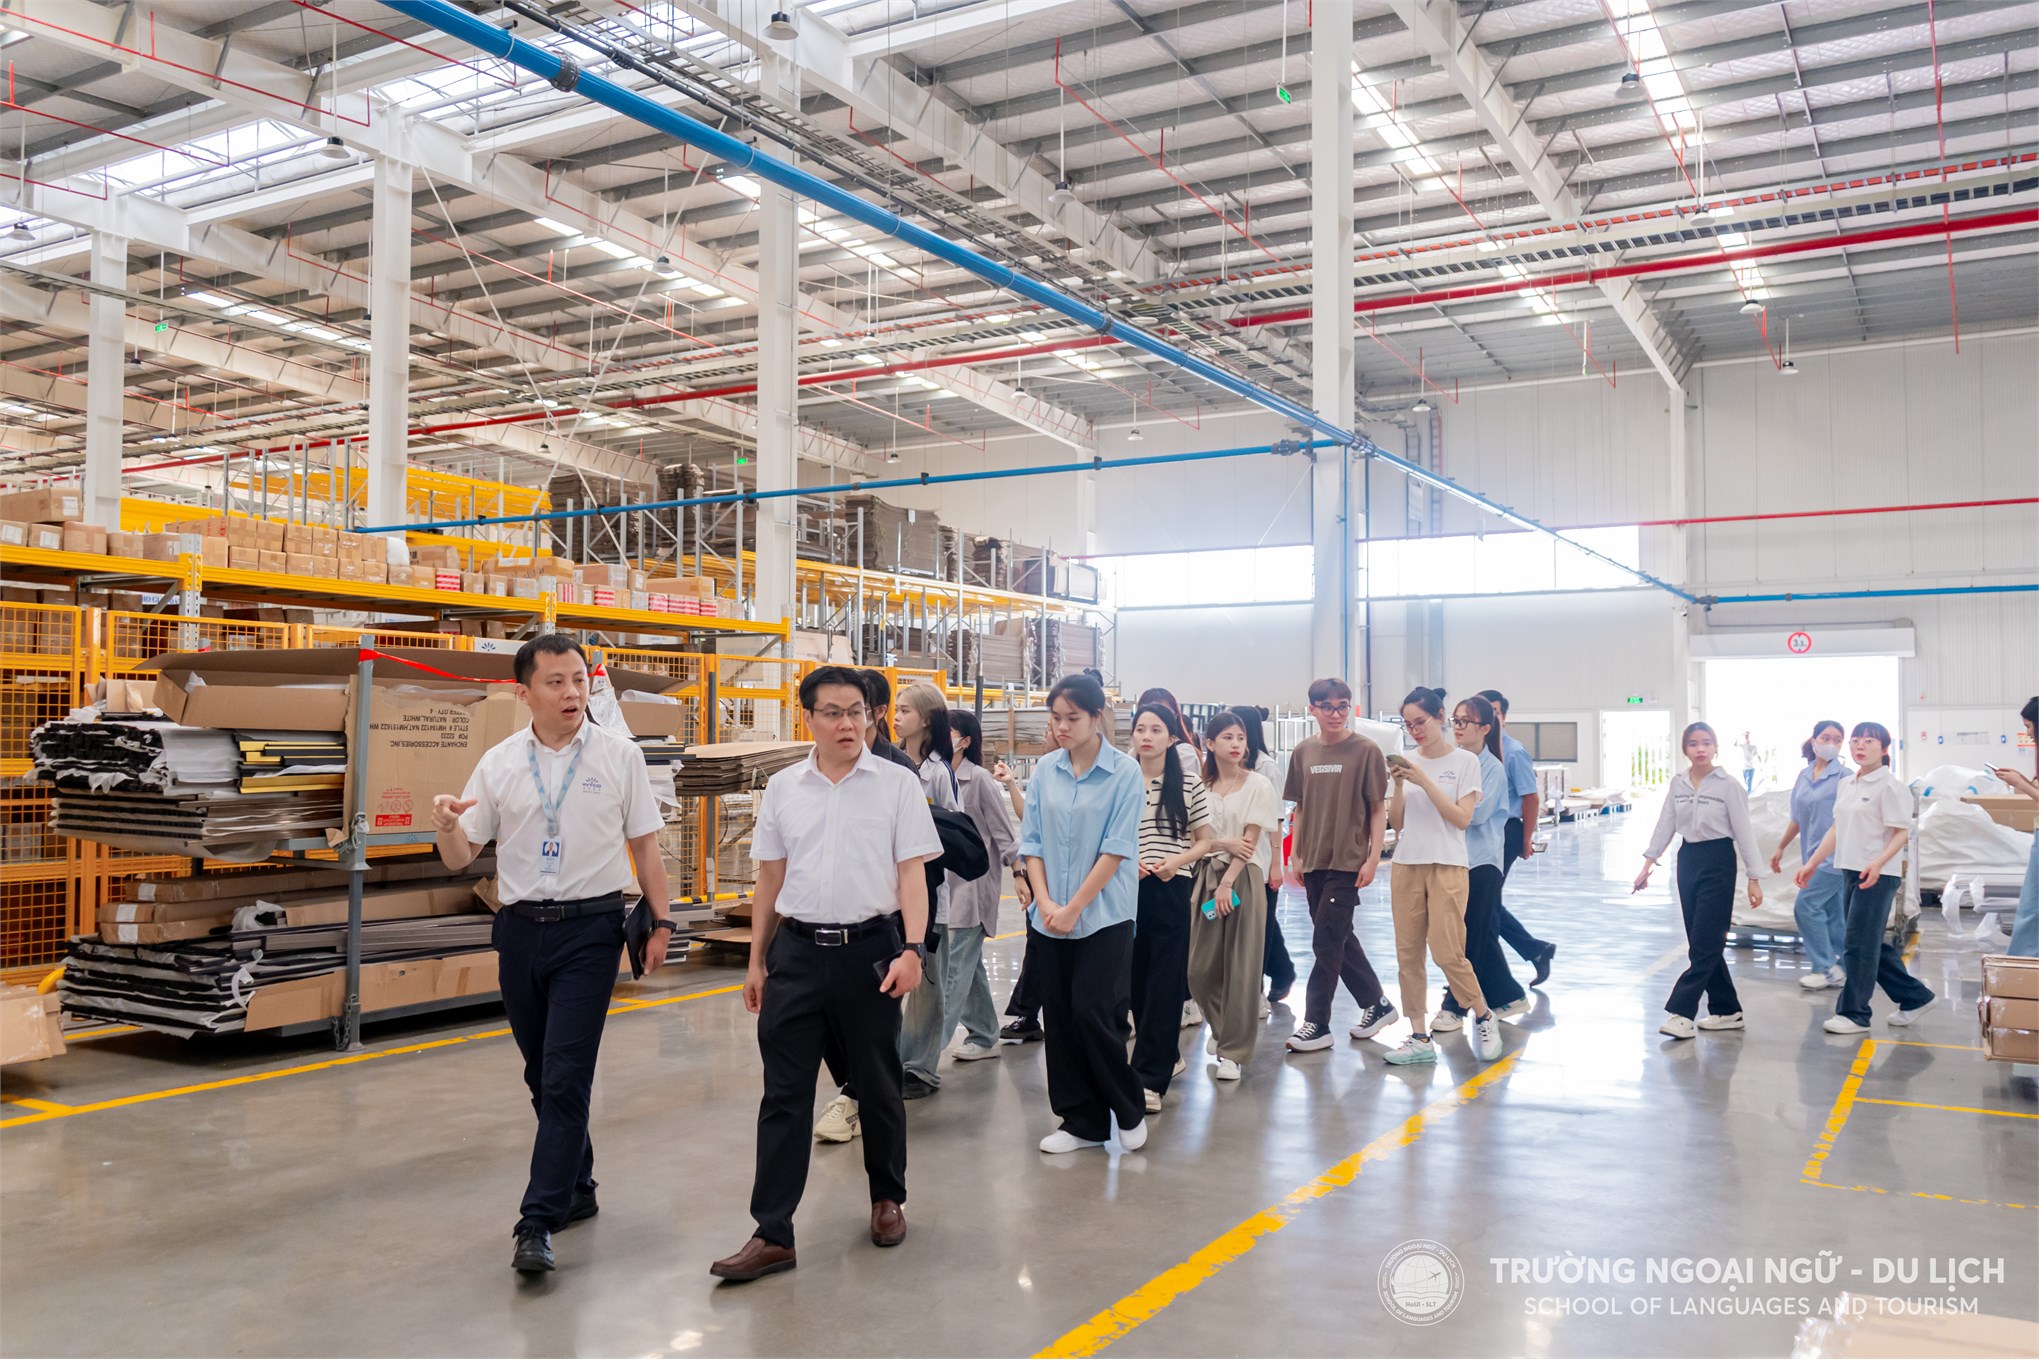 Trường Ngoại ngữ - Du lịch, Đại học Công nghiệp Hà Nội tổ chức tham quan thực tế tại Công ty TNHH Công nghiệp Intco Việt Nam.